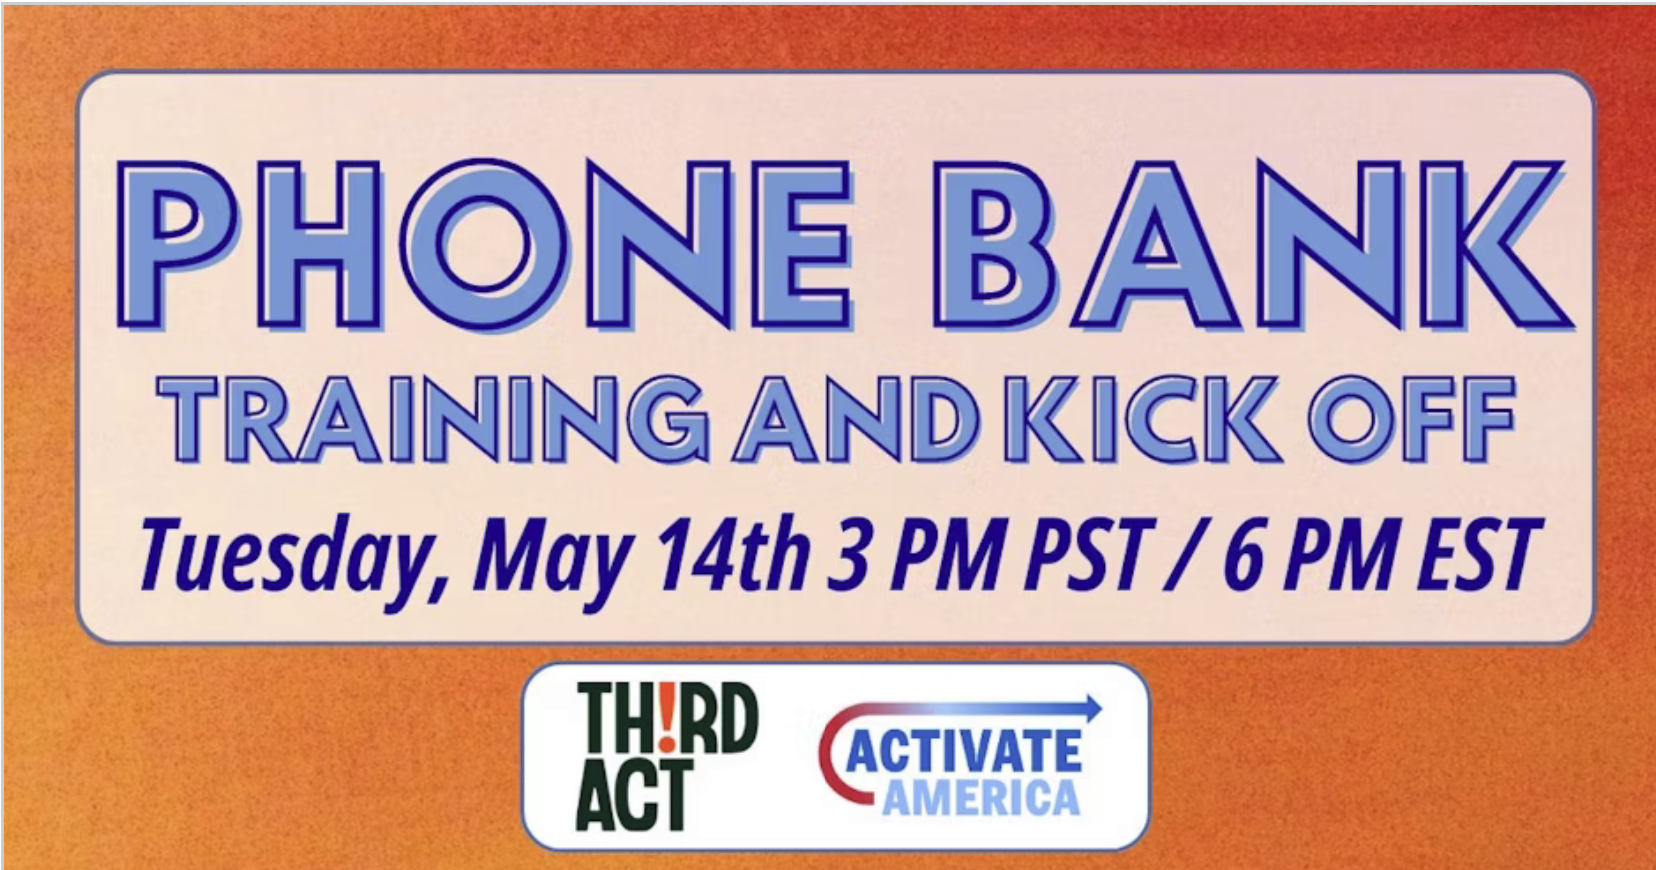 Phone Bank Training and Kickoff. Tuesday, May 14, 3 PM PST